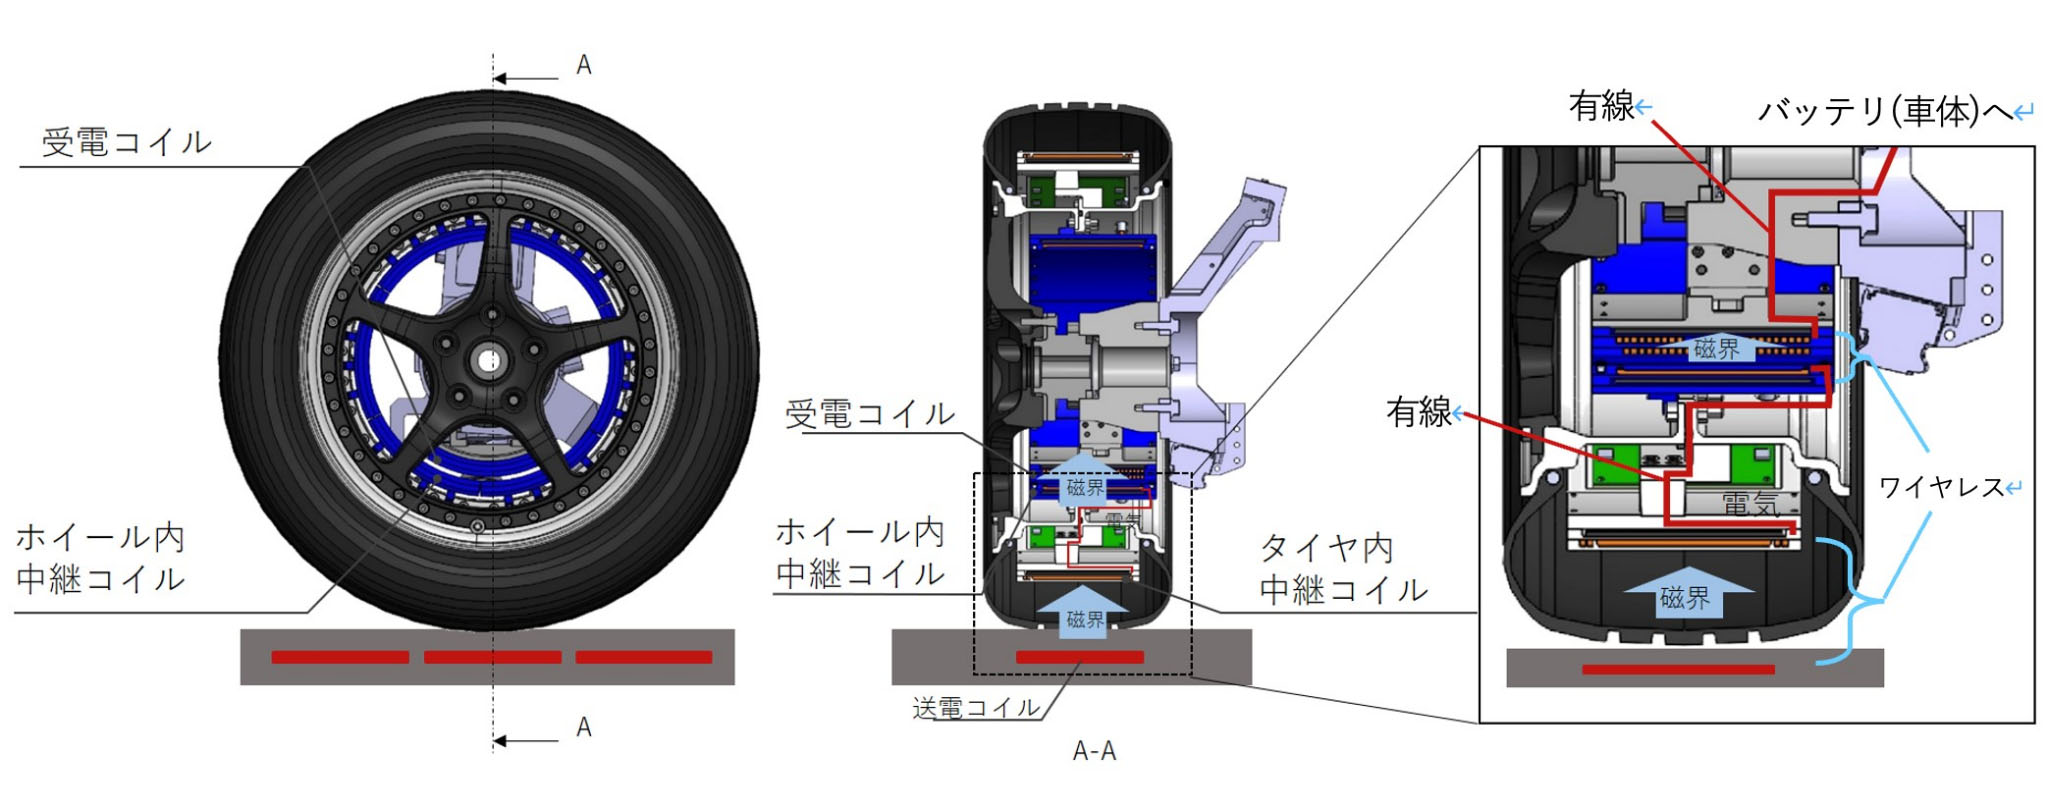 図）タイヤ給電の原理（左：正面図、中央：断面図、右：拡大図）